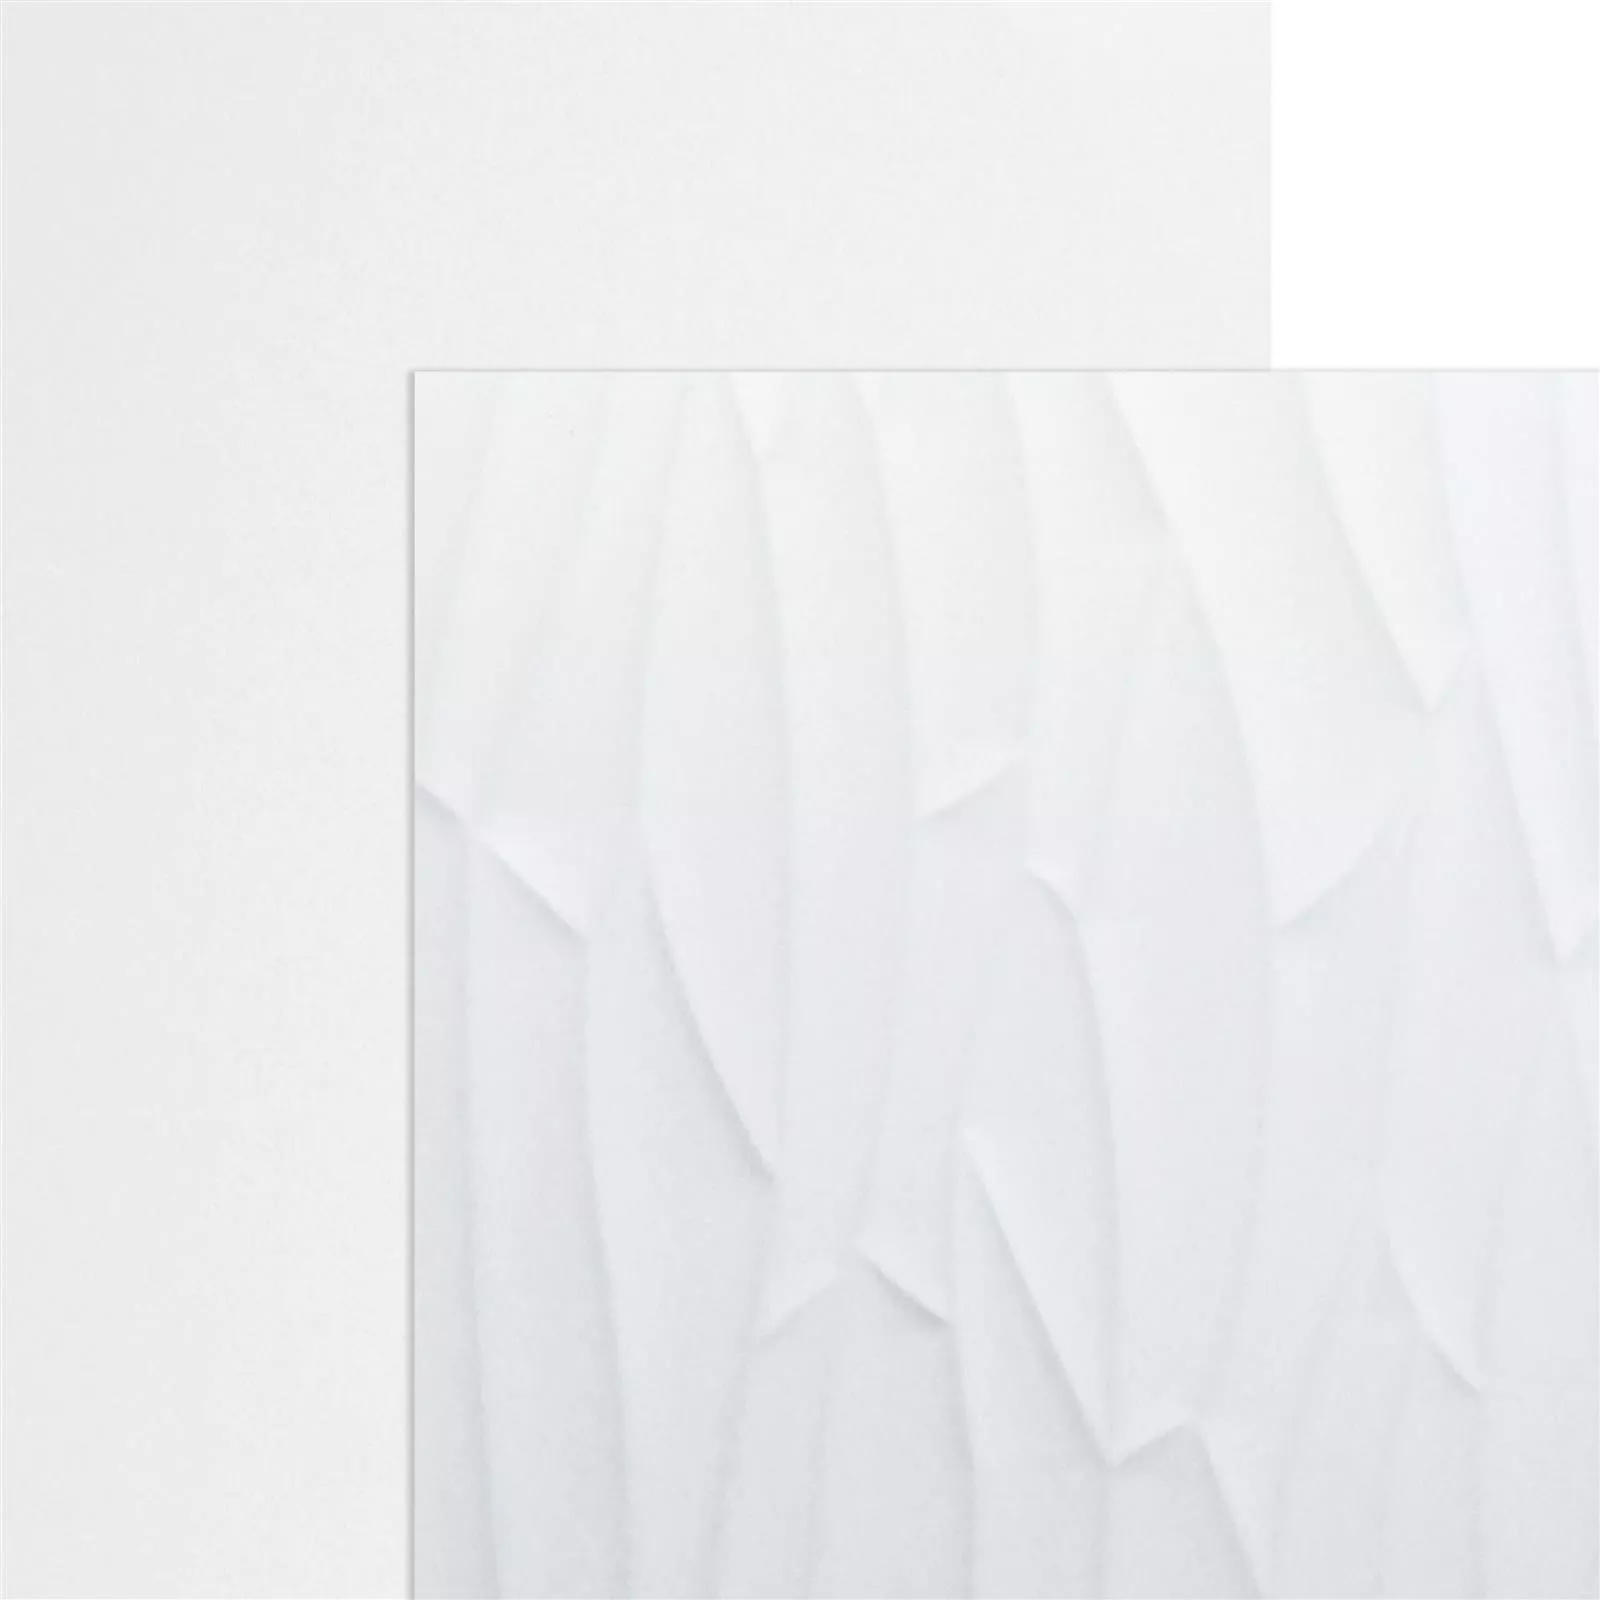 Sample Wall Tiles Schönberg White Mat 40x120cm